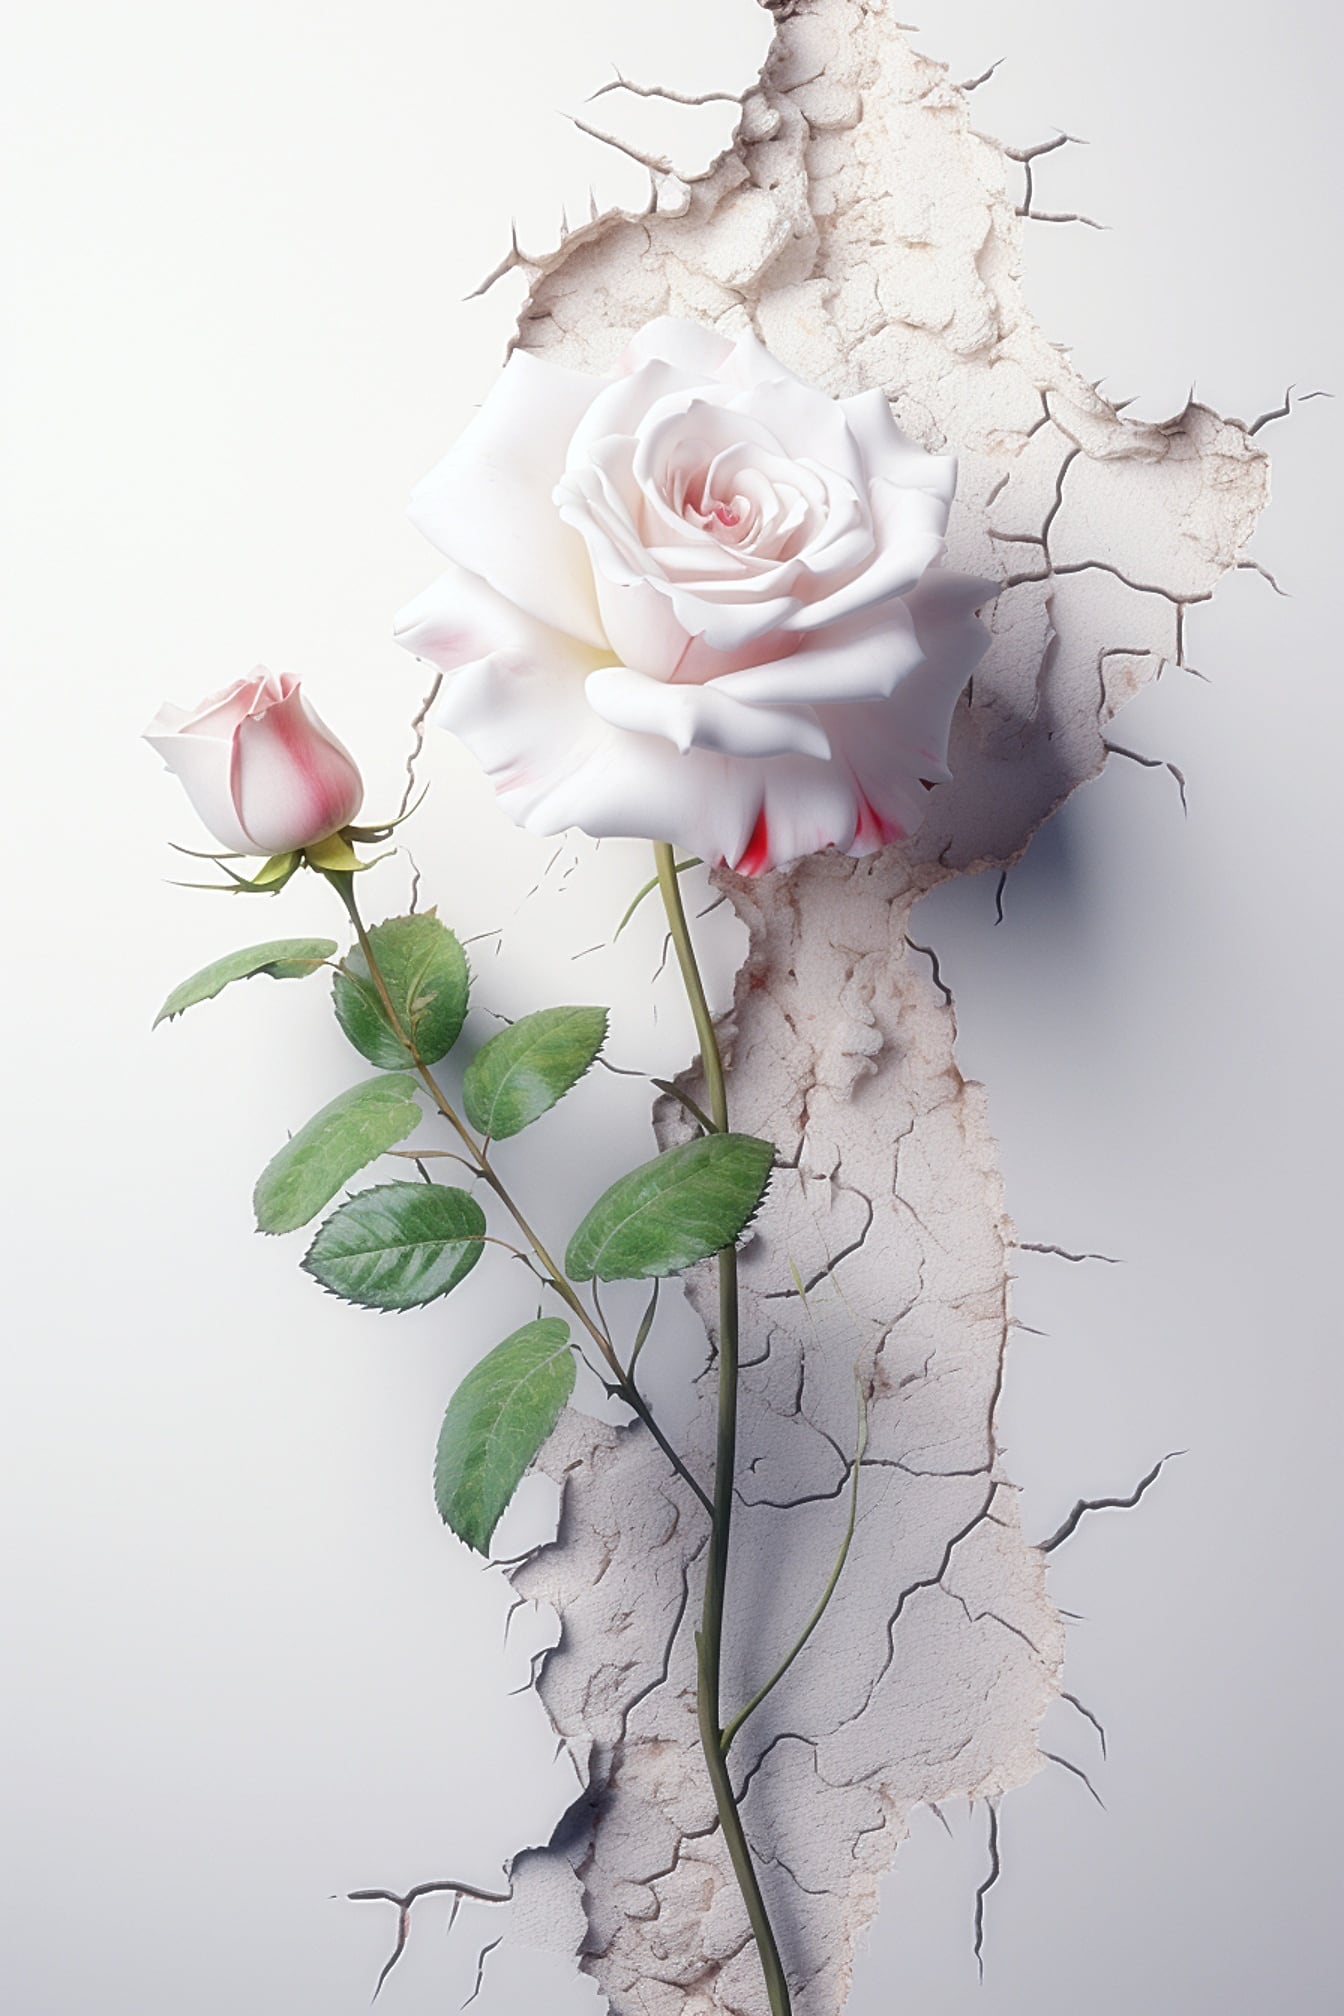 Weiße Rose mit grünen Blättern und einer rosafarbenen Rose an einer rissigen Wand